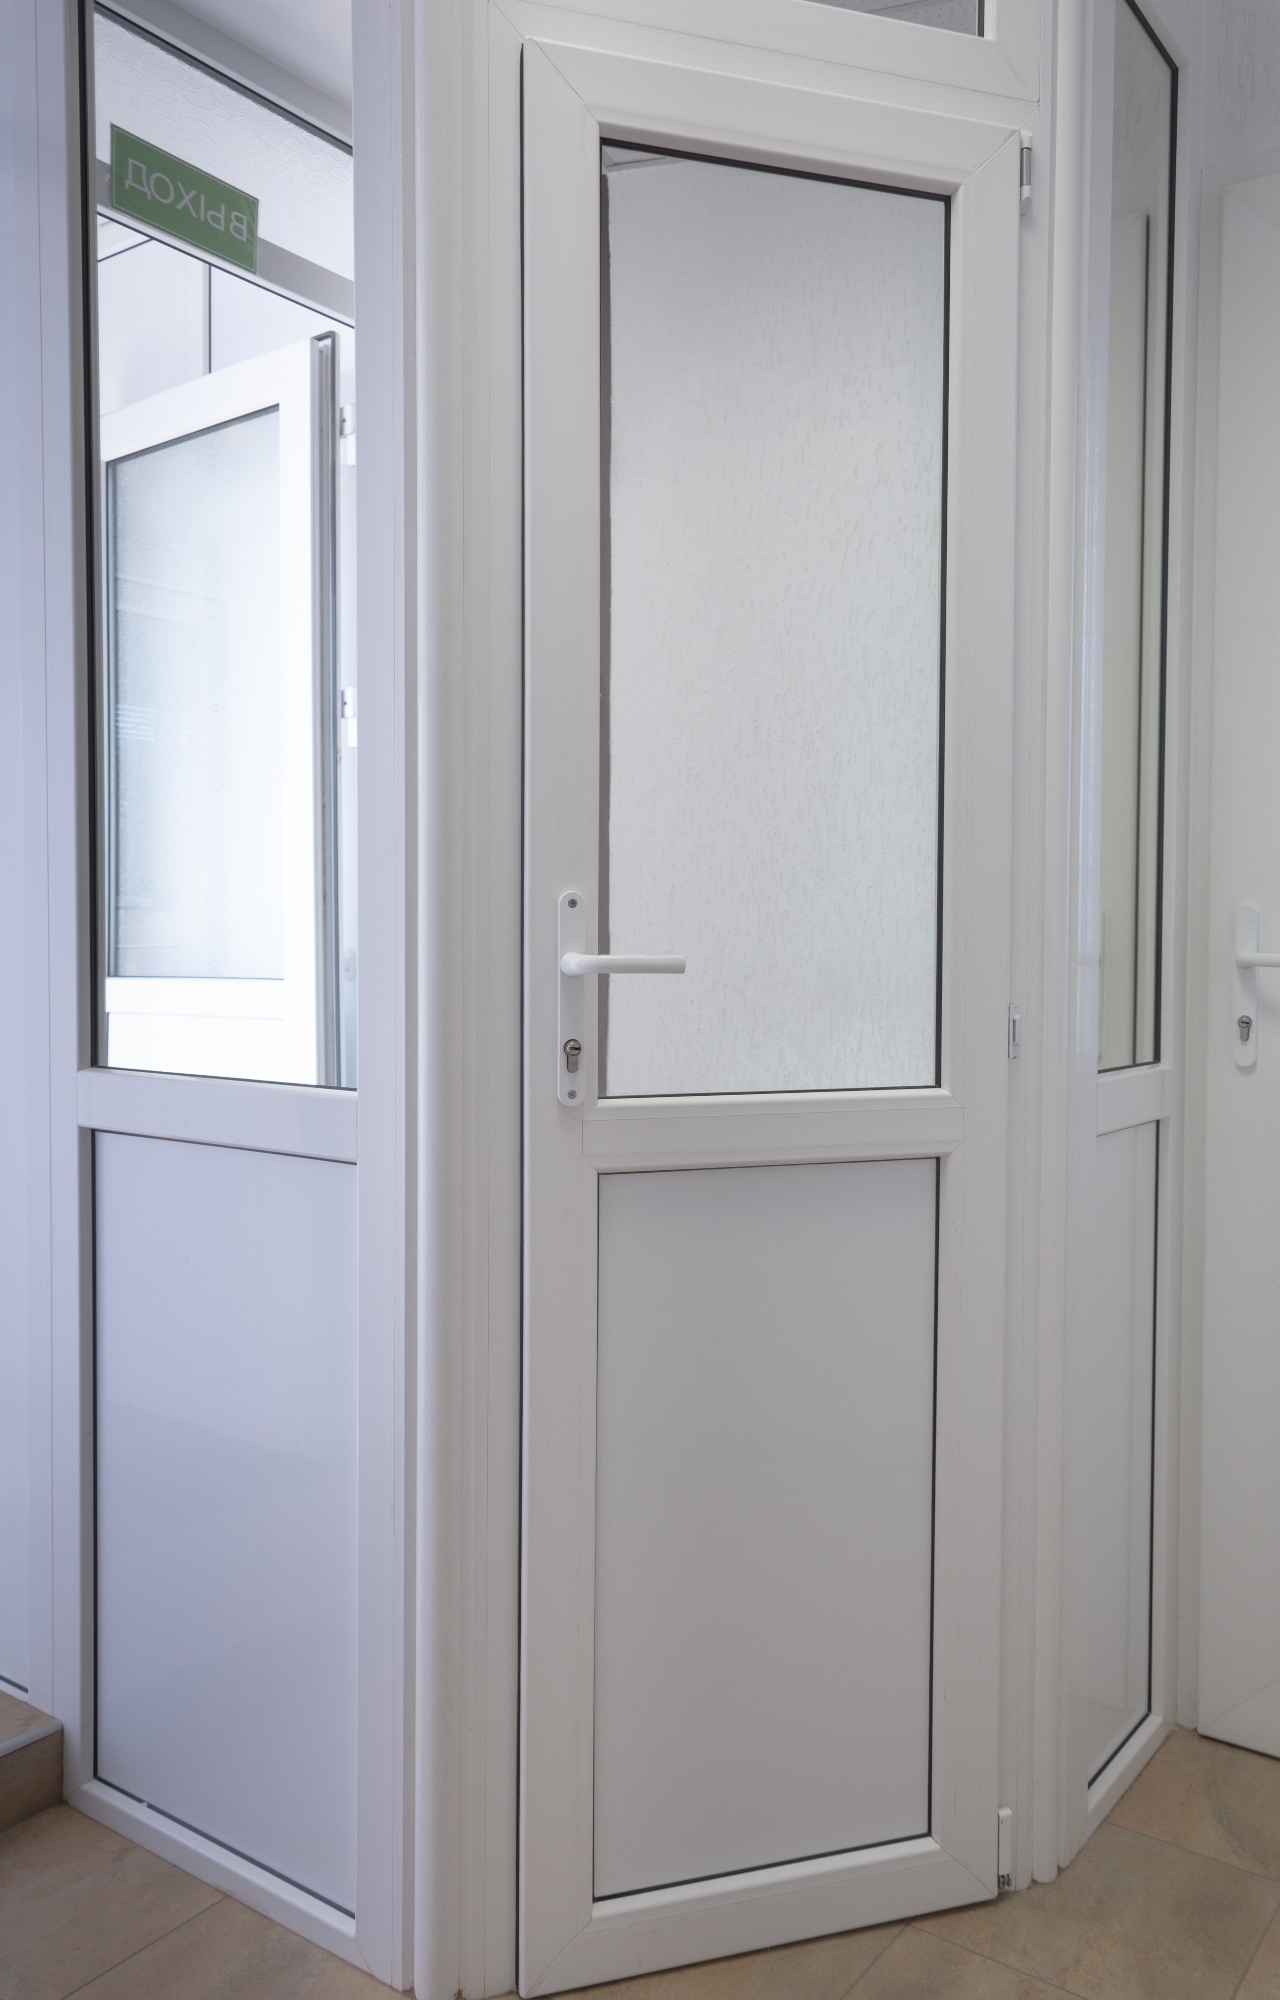 Kakovostna PVC vrata so prava izbira za vaše stanovanje